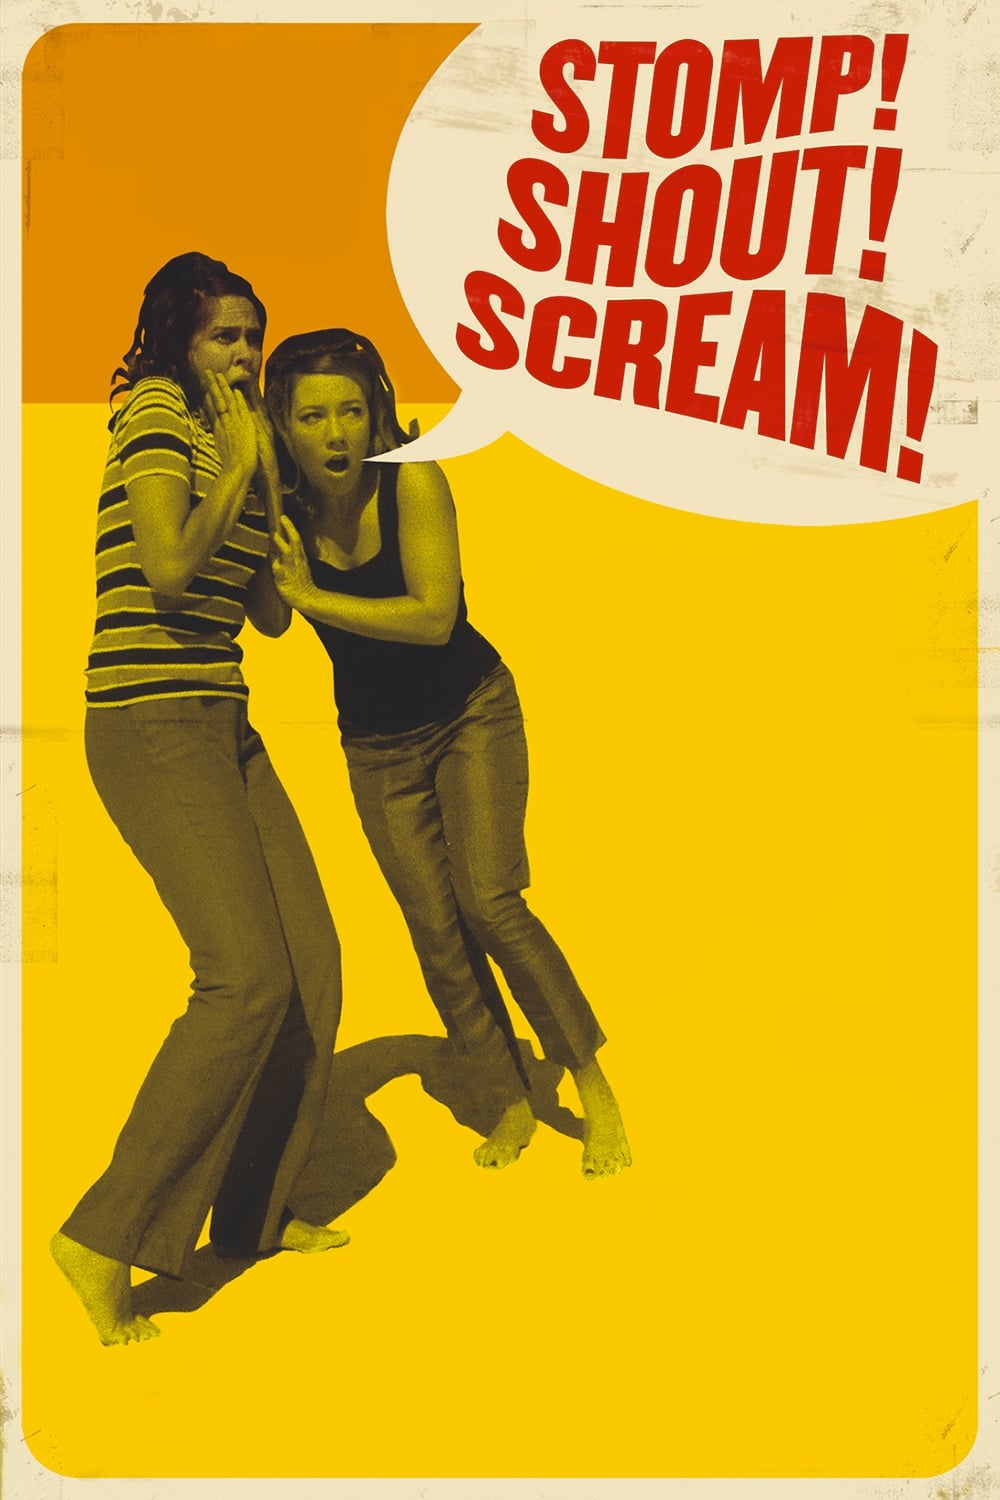 Banner Phim Chuyến Phiêu Lưu Của Ban Nhạc Rock (Stomp! Shout! Scream!)